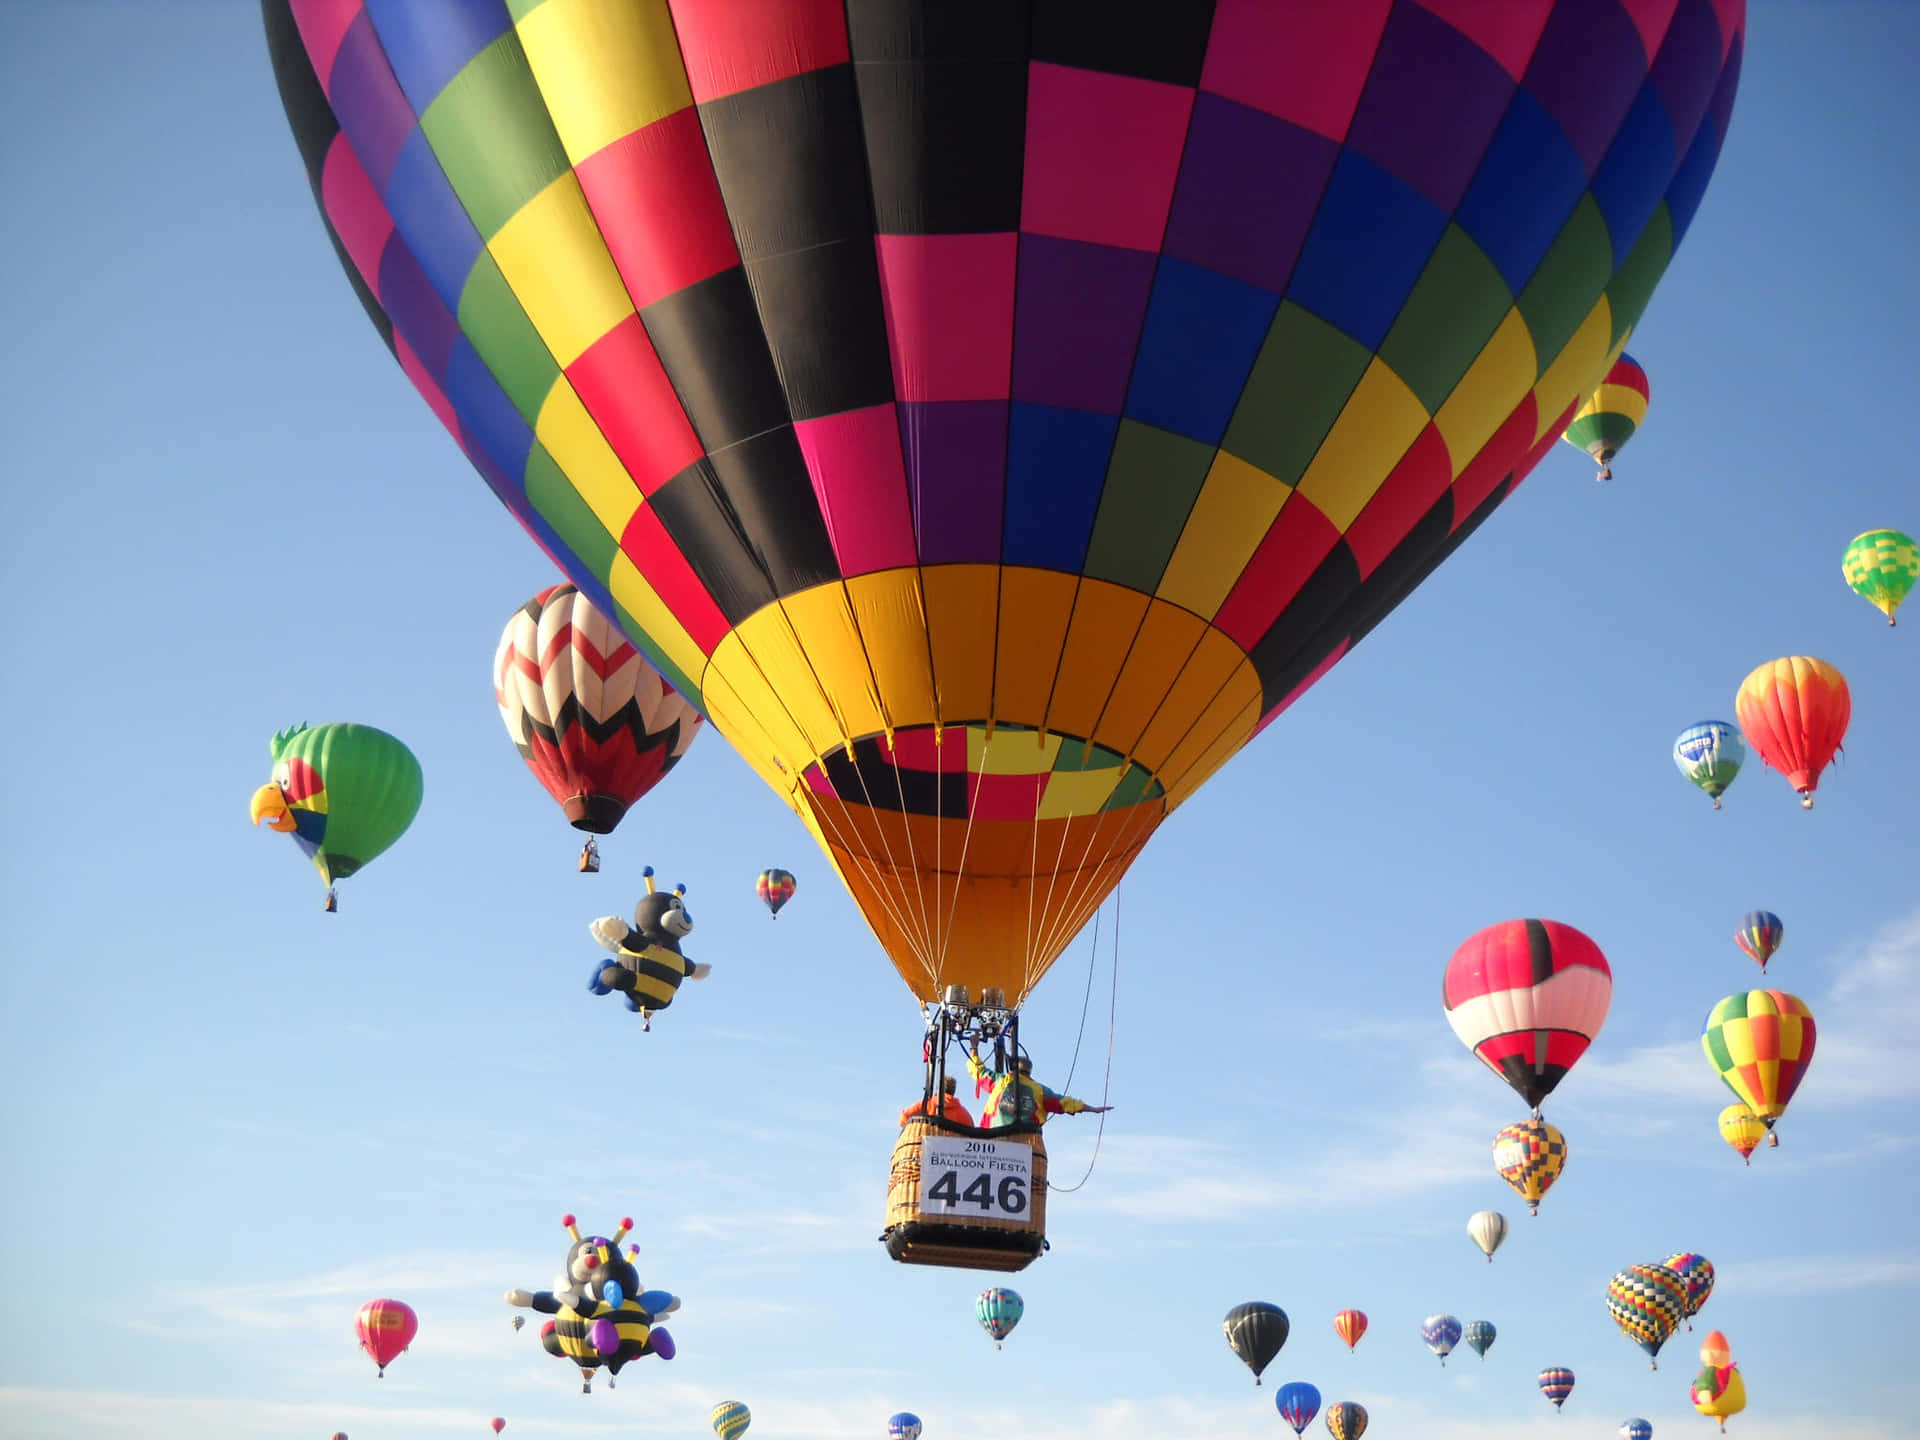 Balõesde Ar Quente Vintage Flutuando Sobre Uma Paisagem Colorida